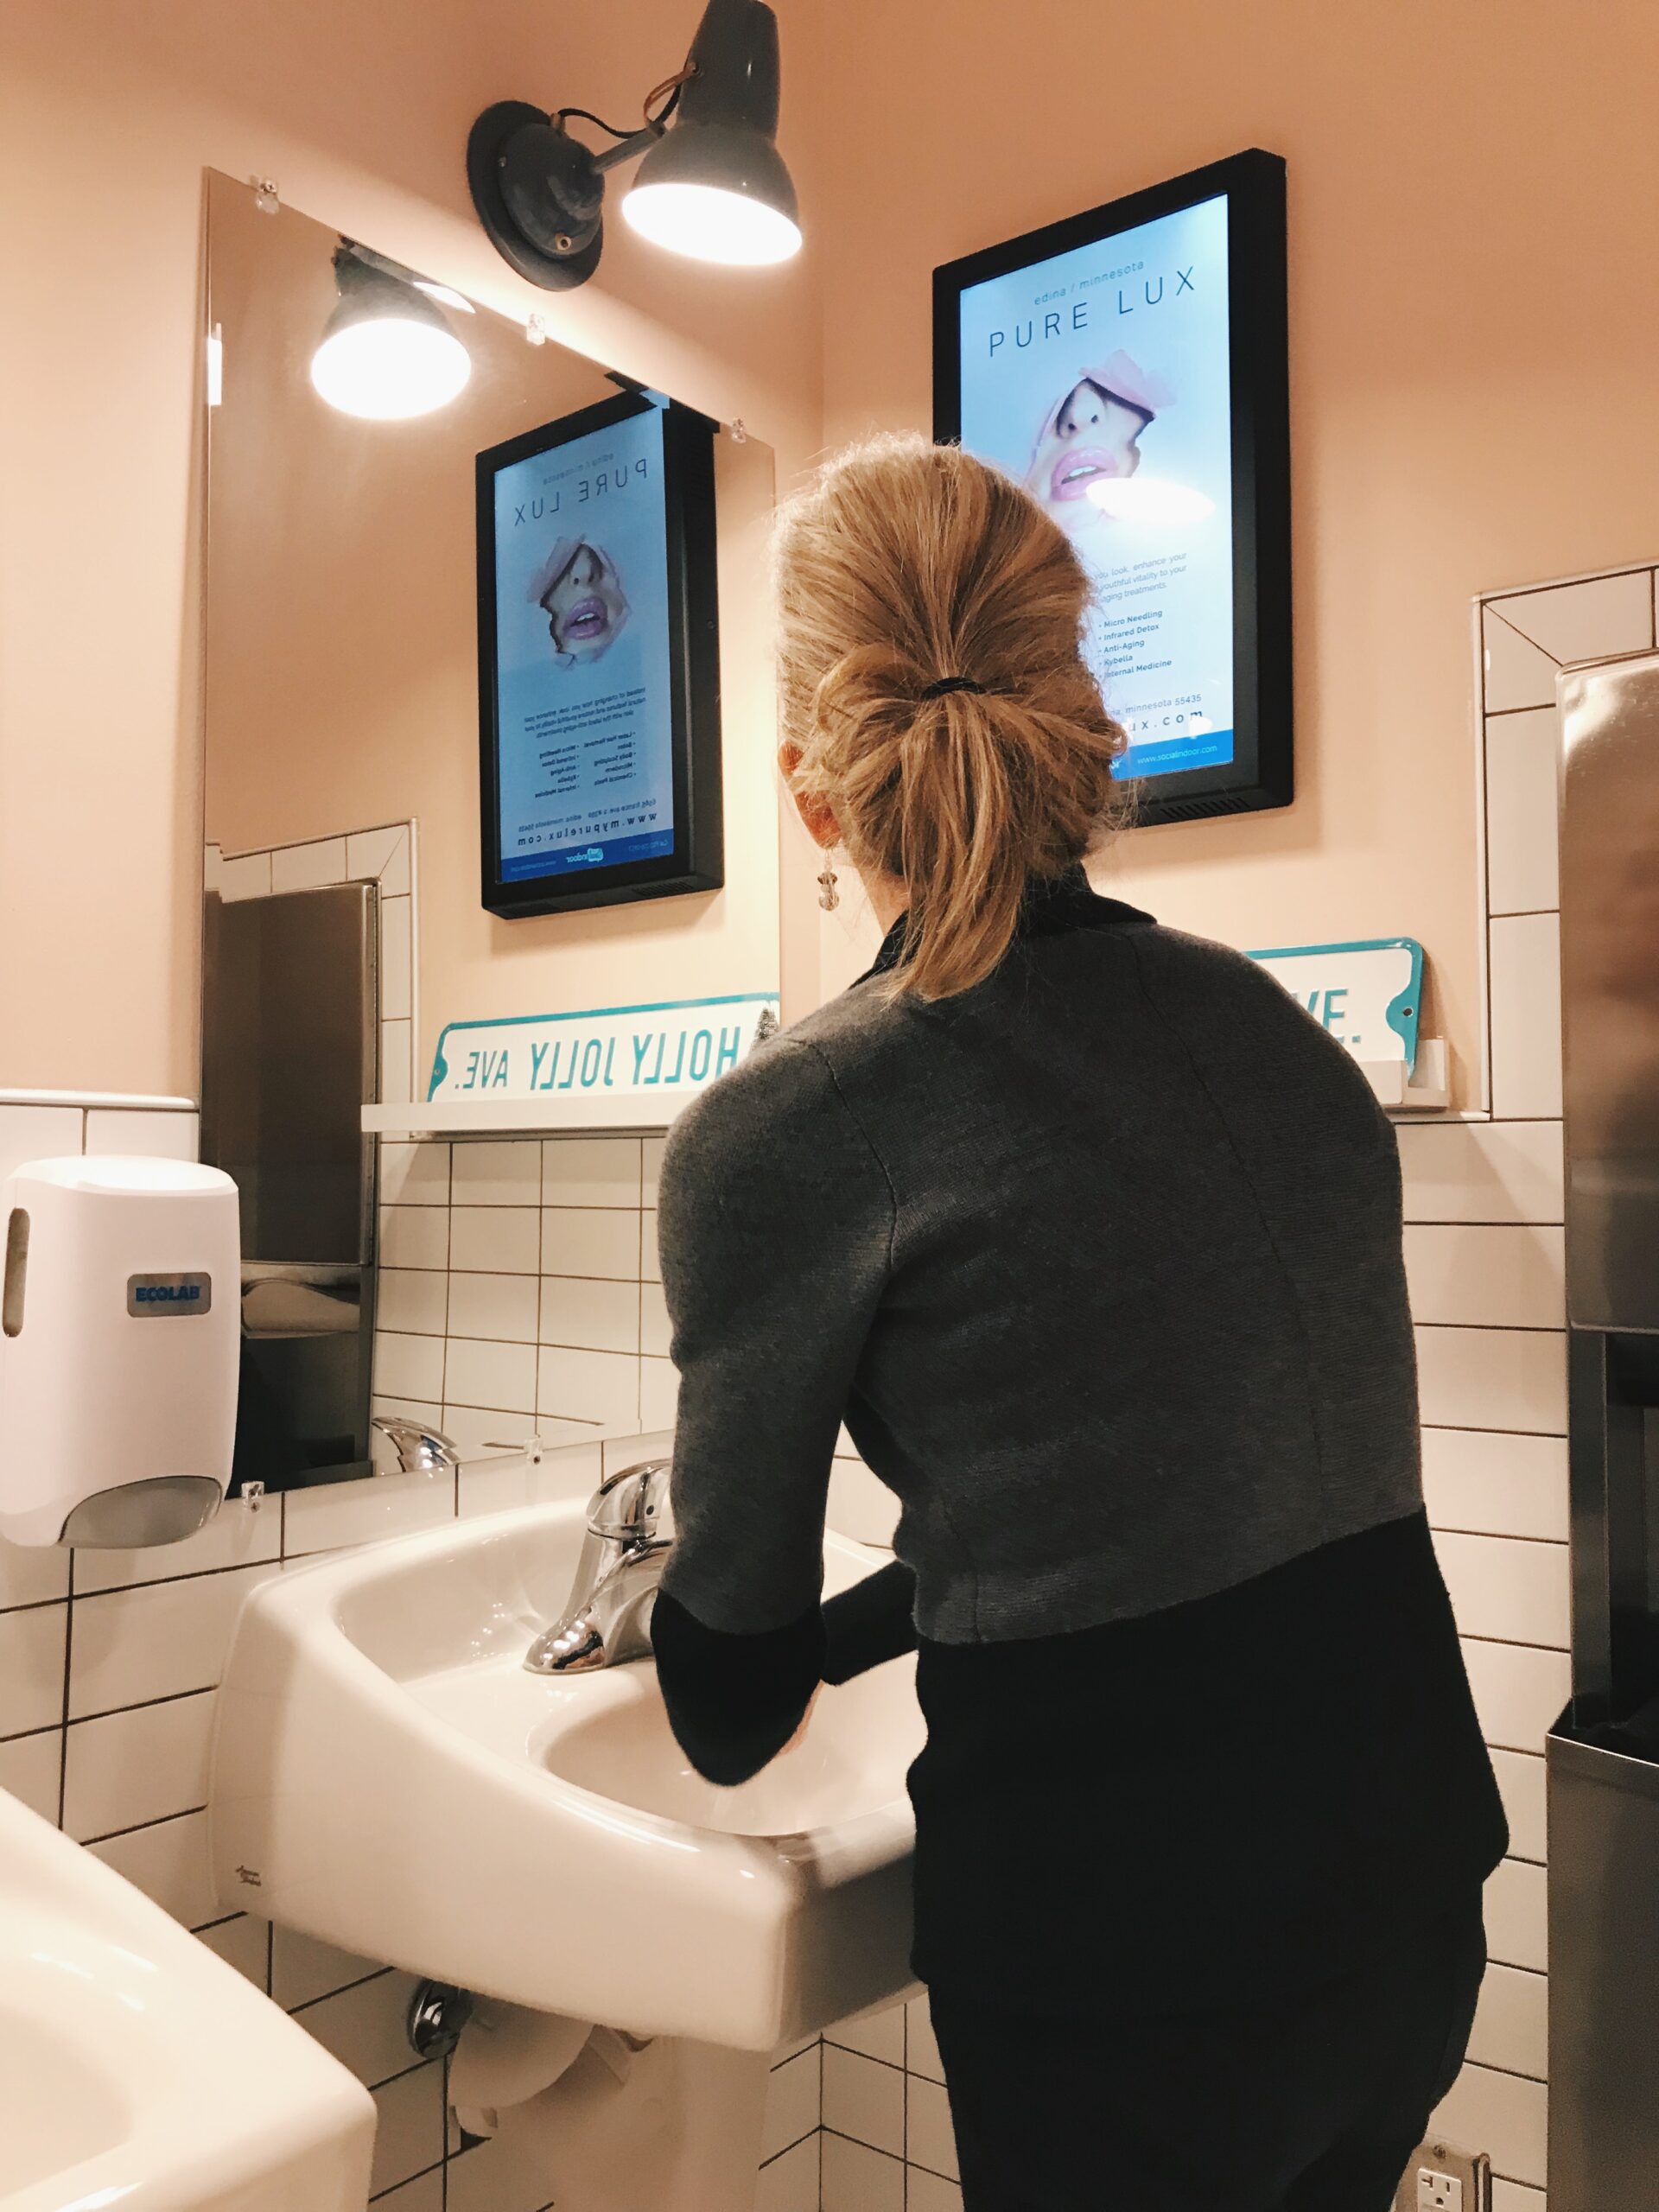 Woman looking at Social Indoor digital indoor advertisement in restroom